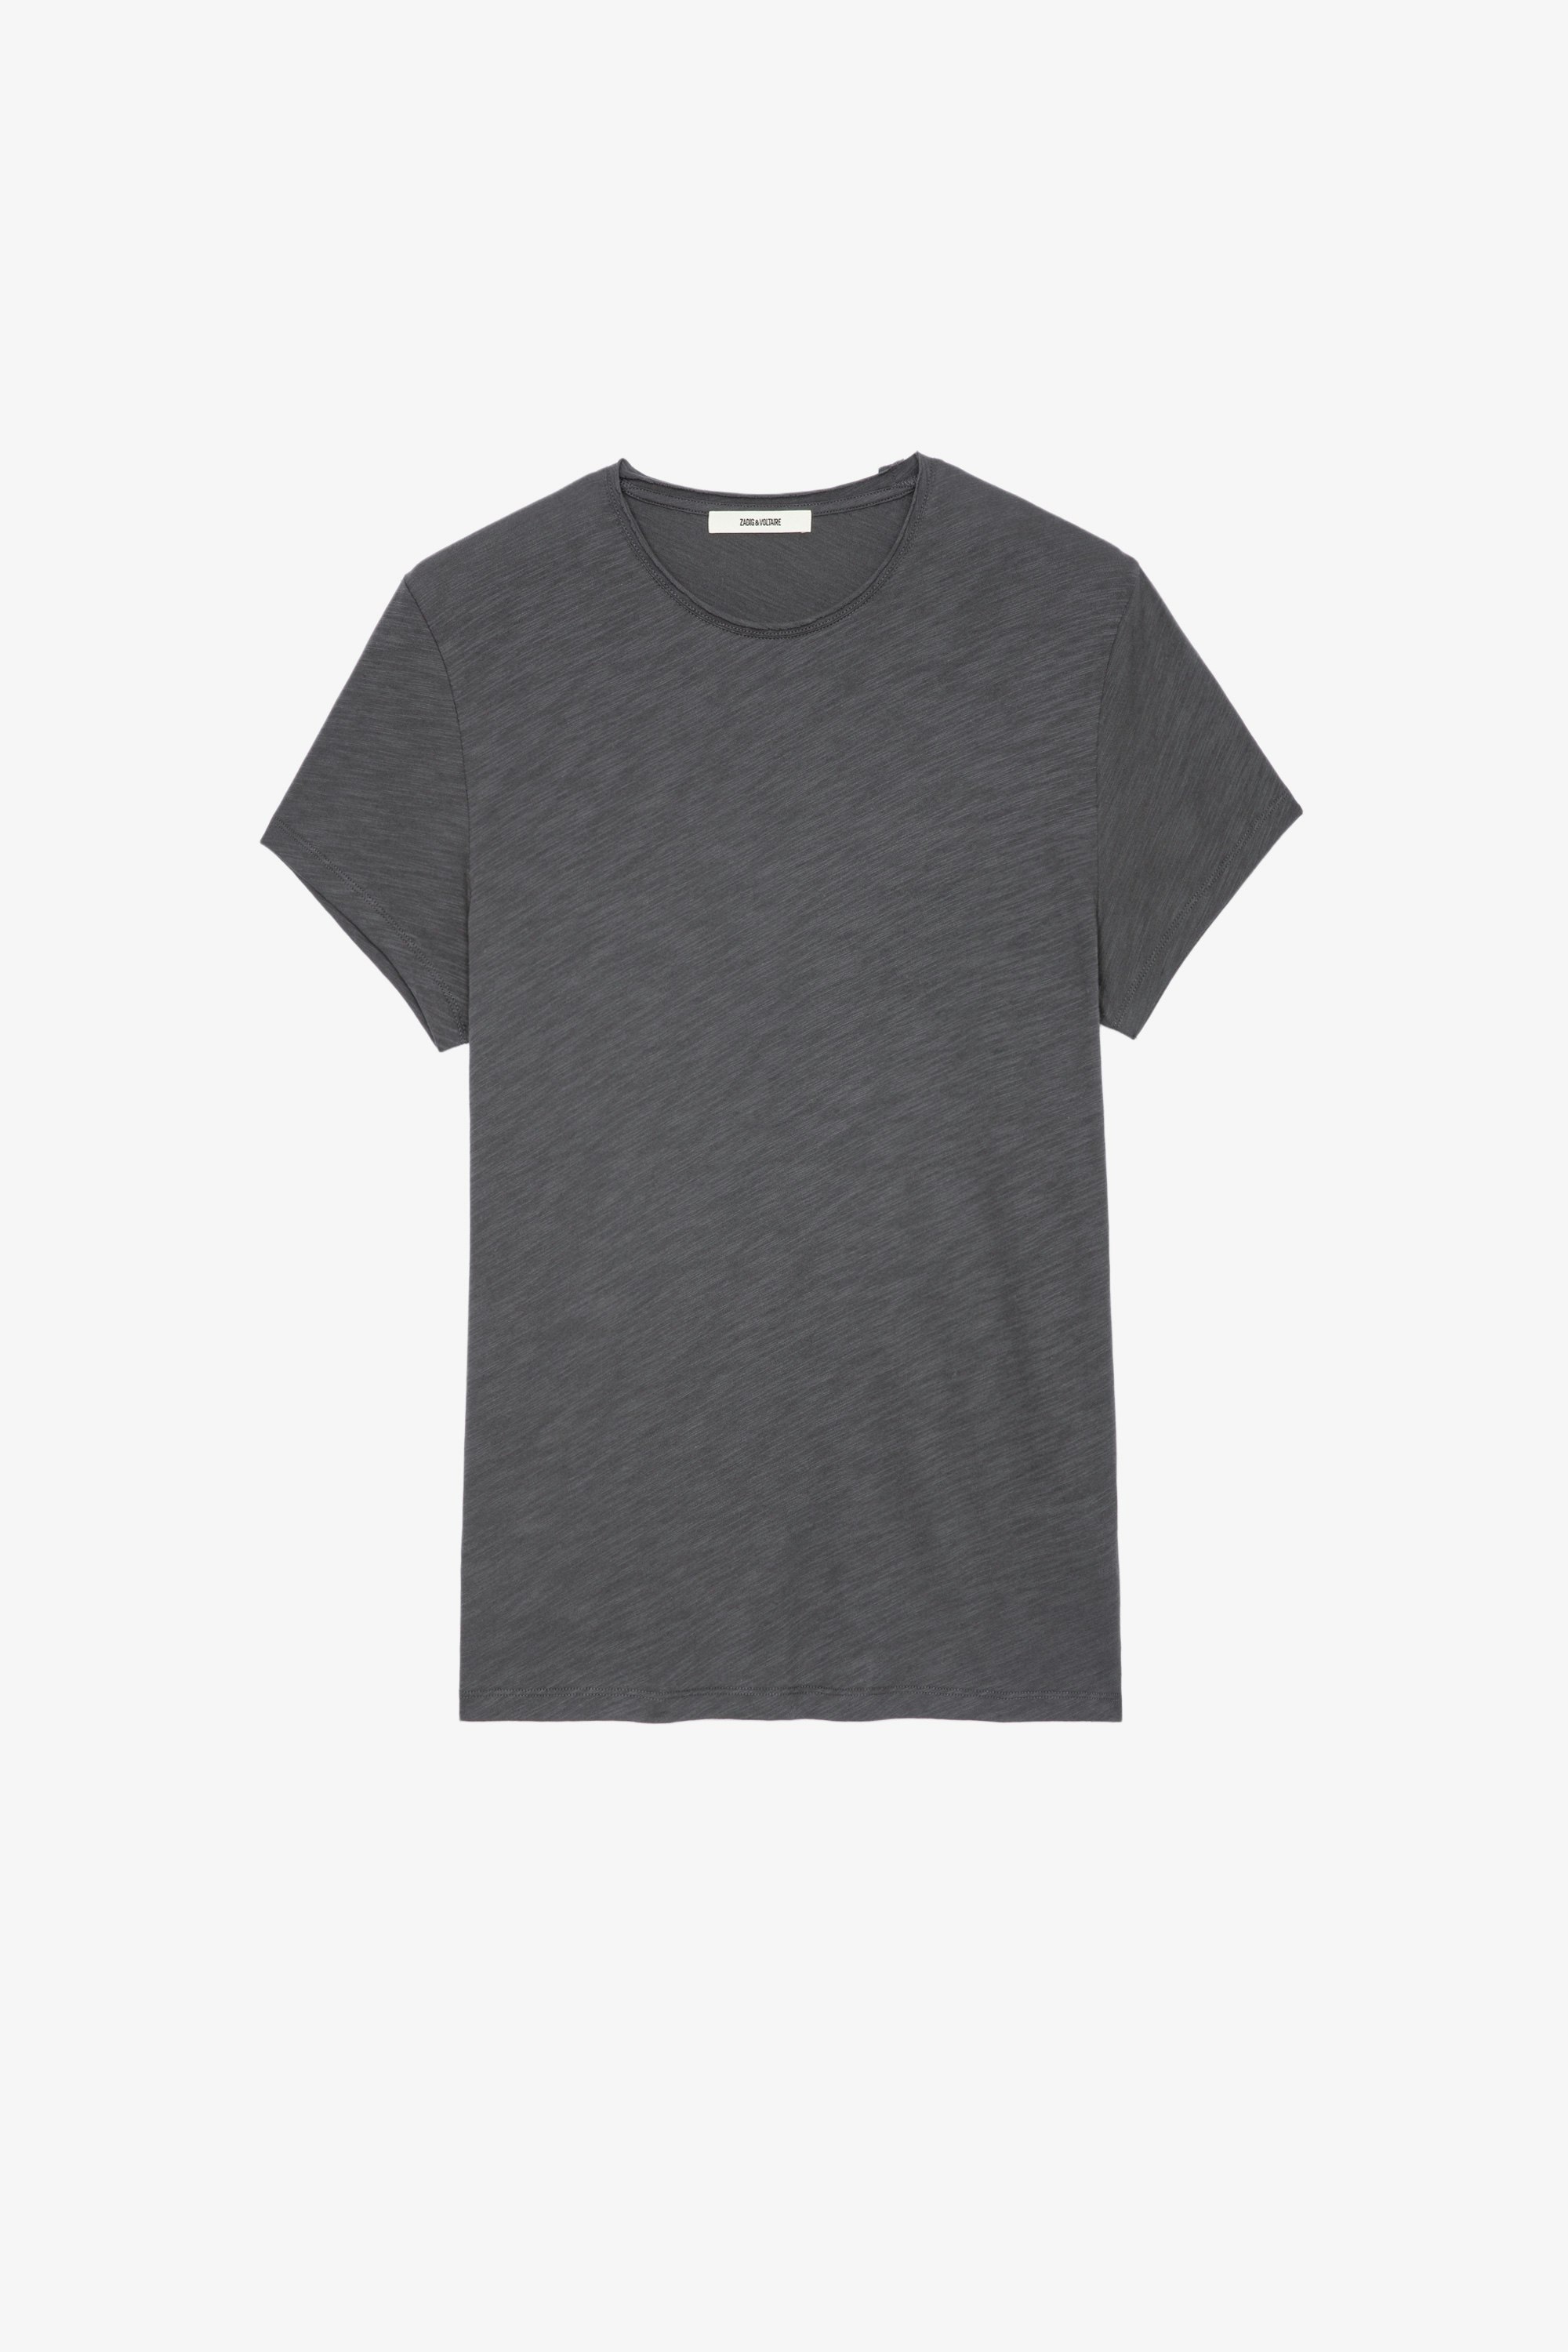 Toby Slub T-Shirt Men's grey cotton slub T-shirt